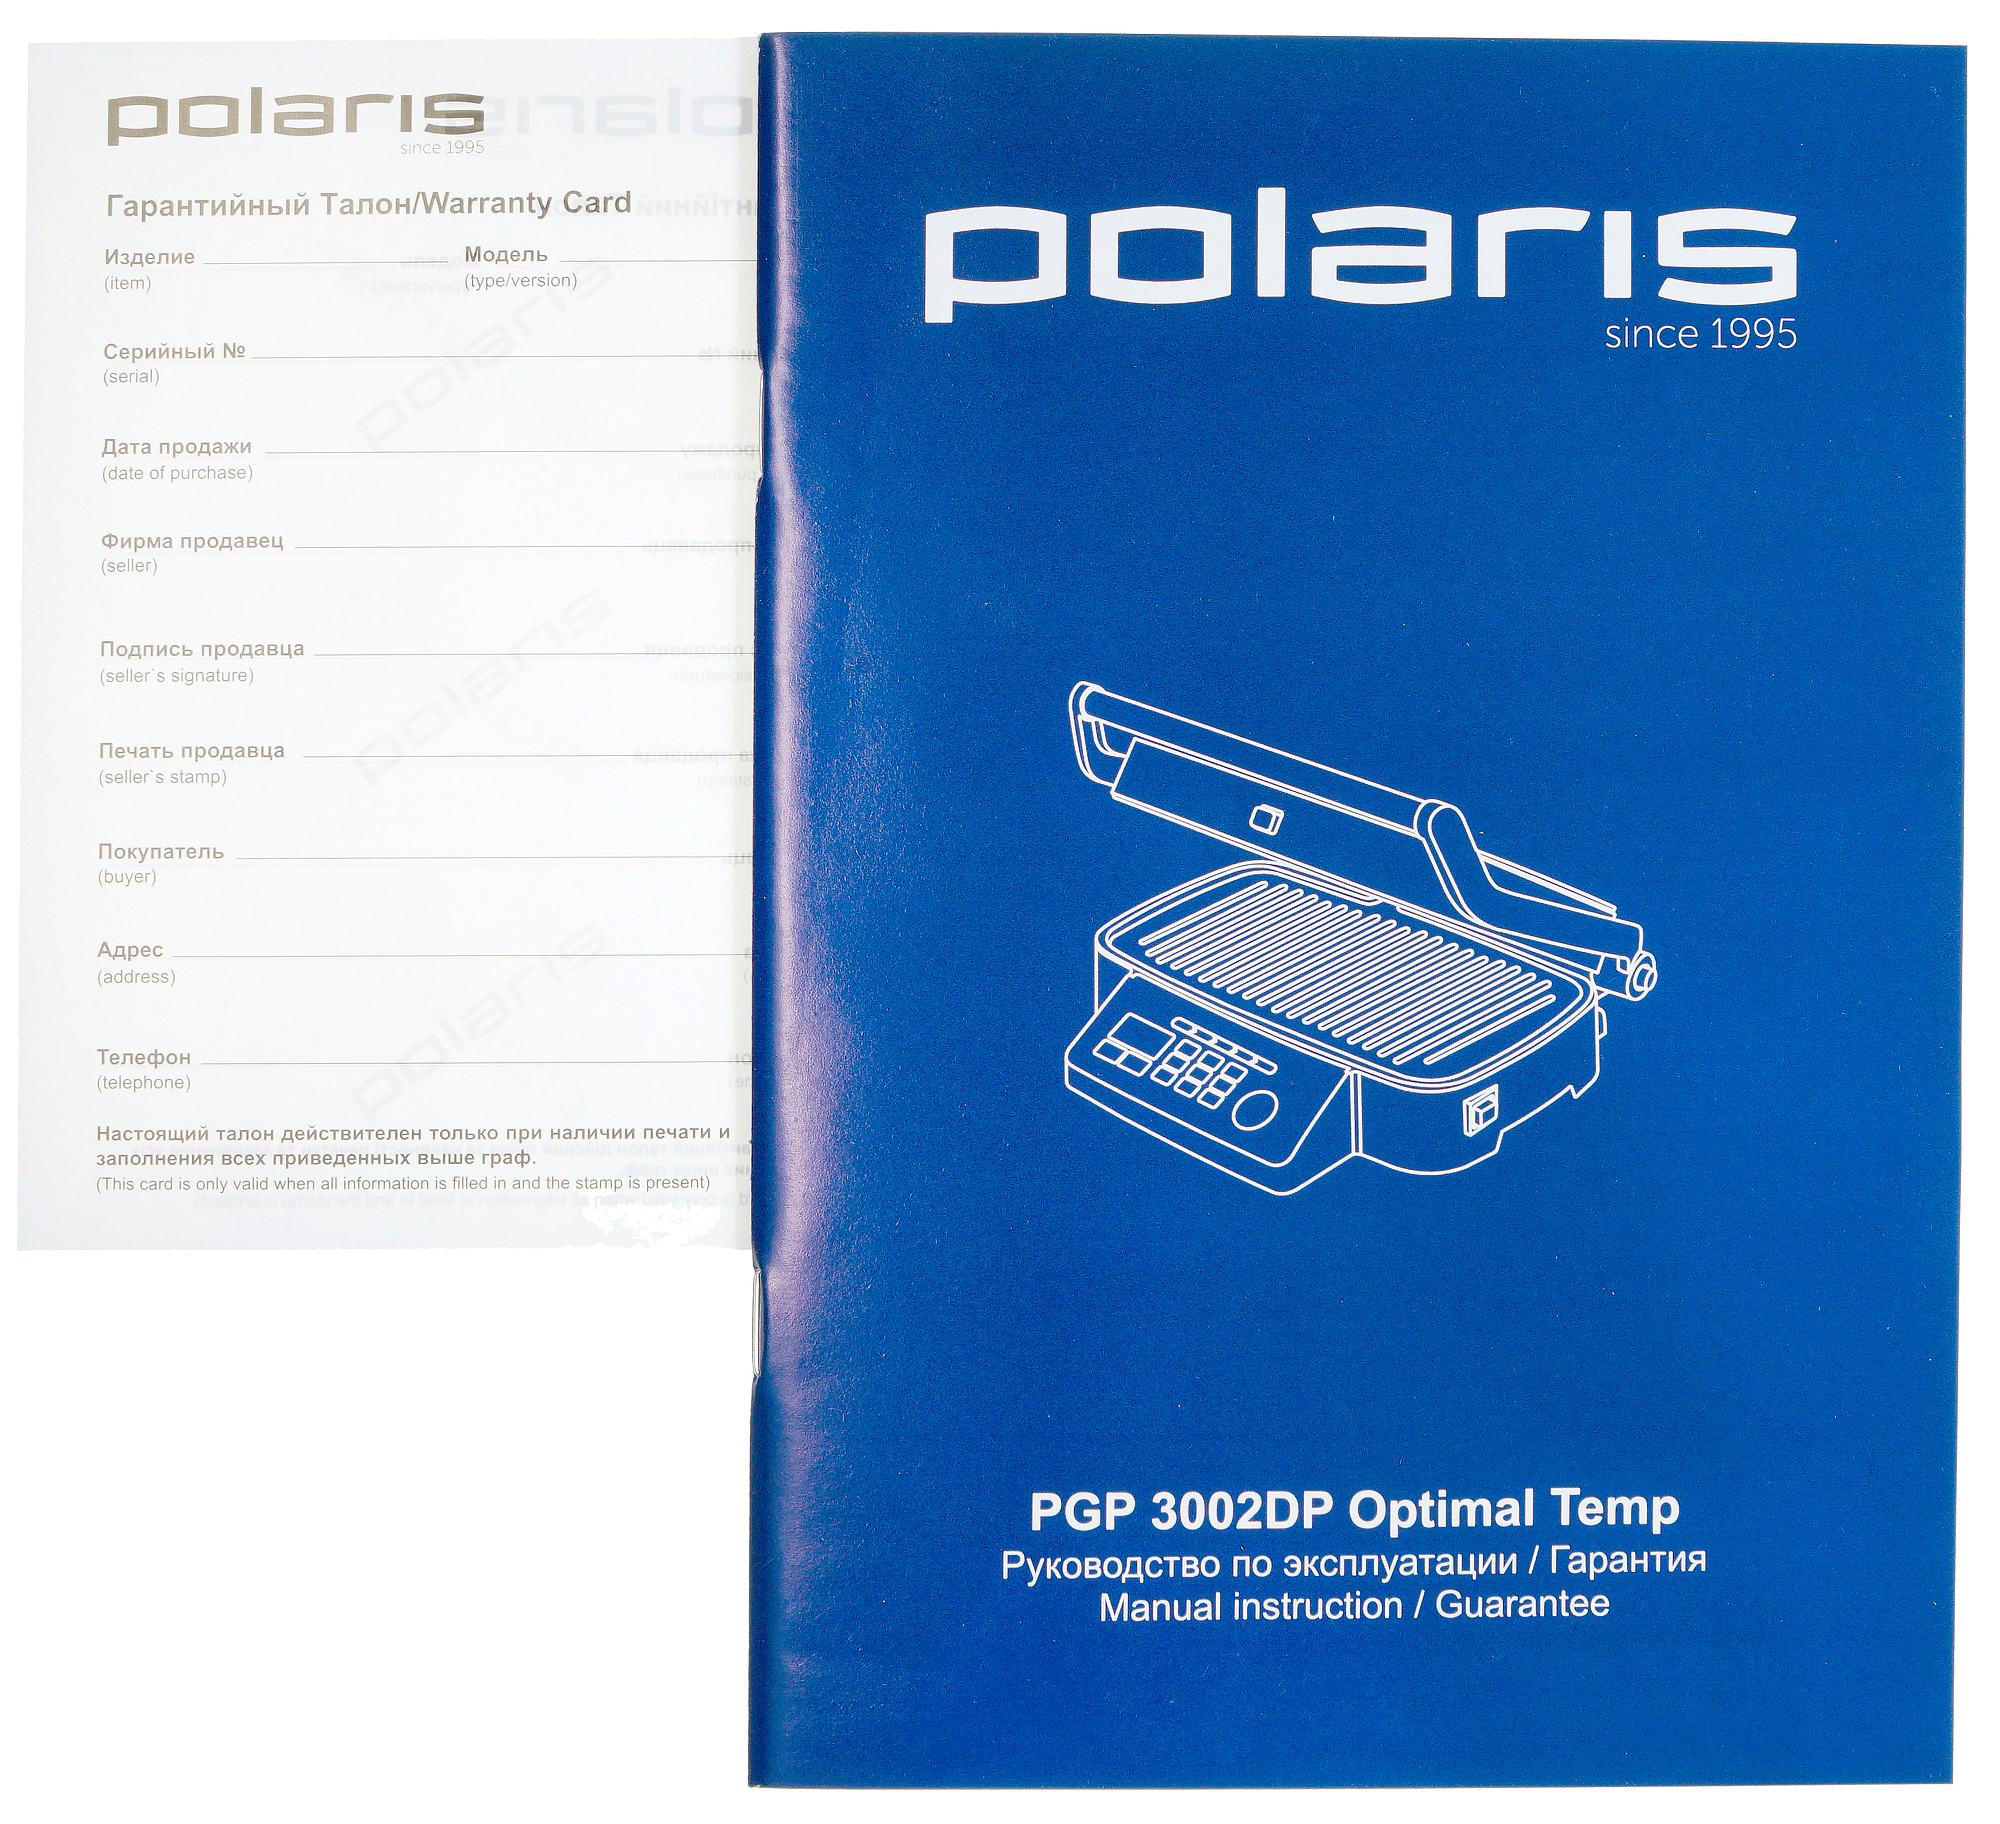 Pgp 3002dp optimal temp. Polaris PGP 3002dp OPTIMAL Temp панель. Гриль Polaris 3002dp. Гриль Polaris PGP 3002dp OPTIMAL Temp. Polaris since 1995 гриль.